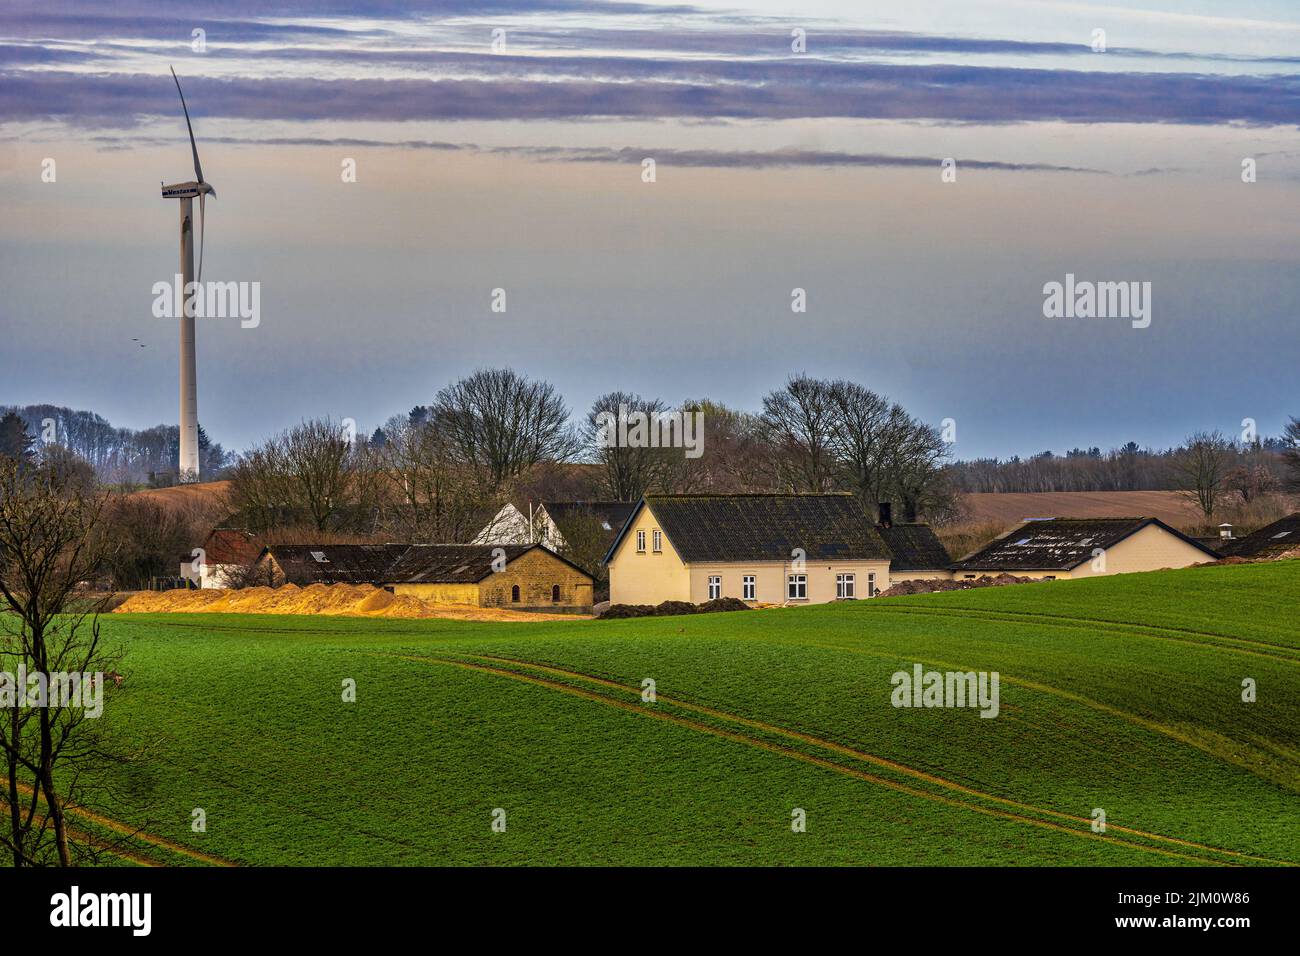 Paesaggio agricolo con campi coltivati, un gruppo di casali e una turbina eolica. Assens, Fyn Island, Danimarca, Europa Foto Stock